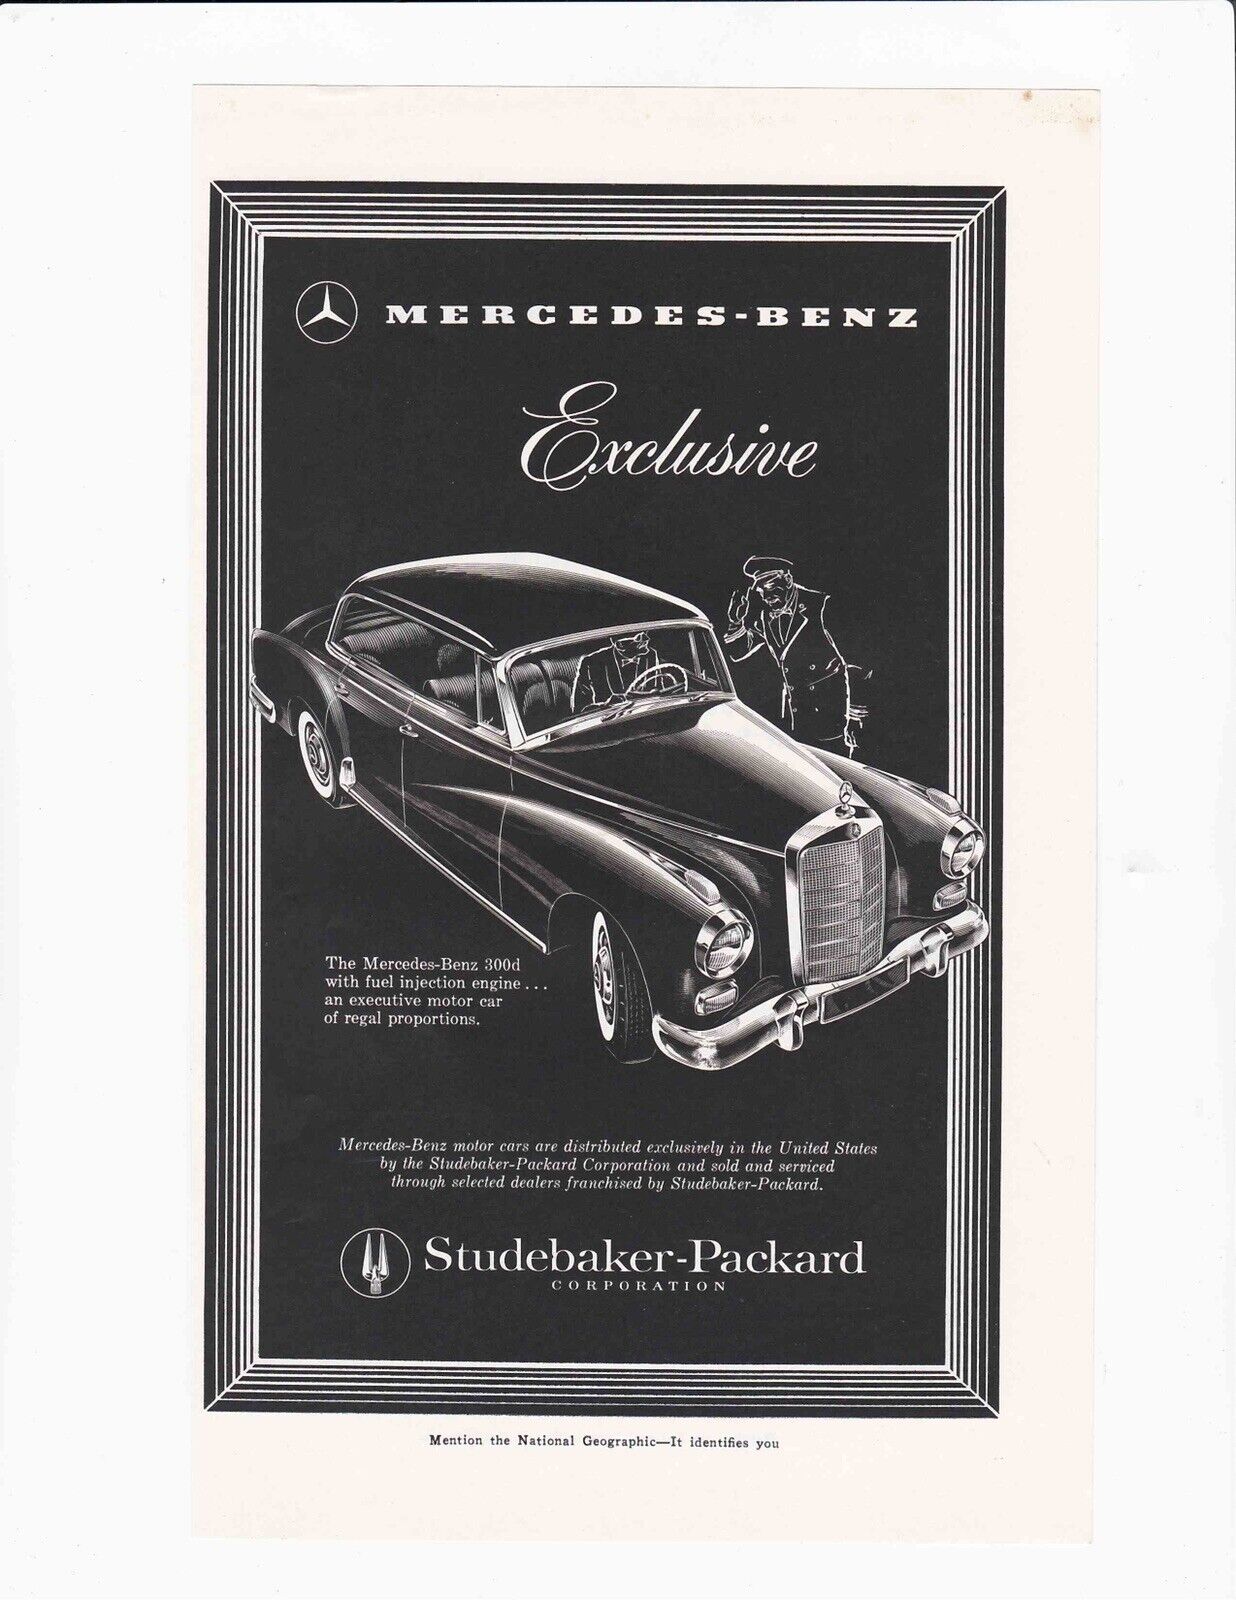 1957 Mercedes-Benz 300d Studebaker 10